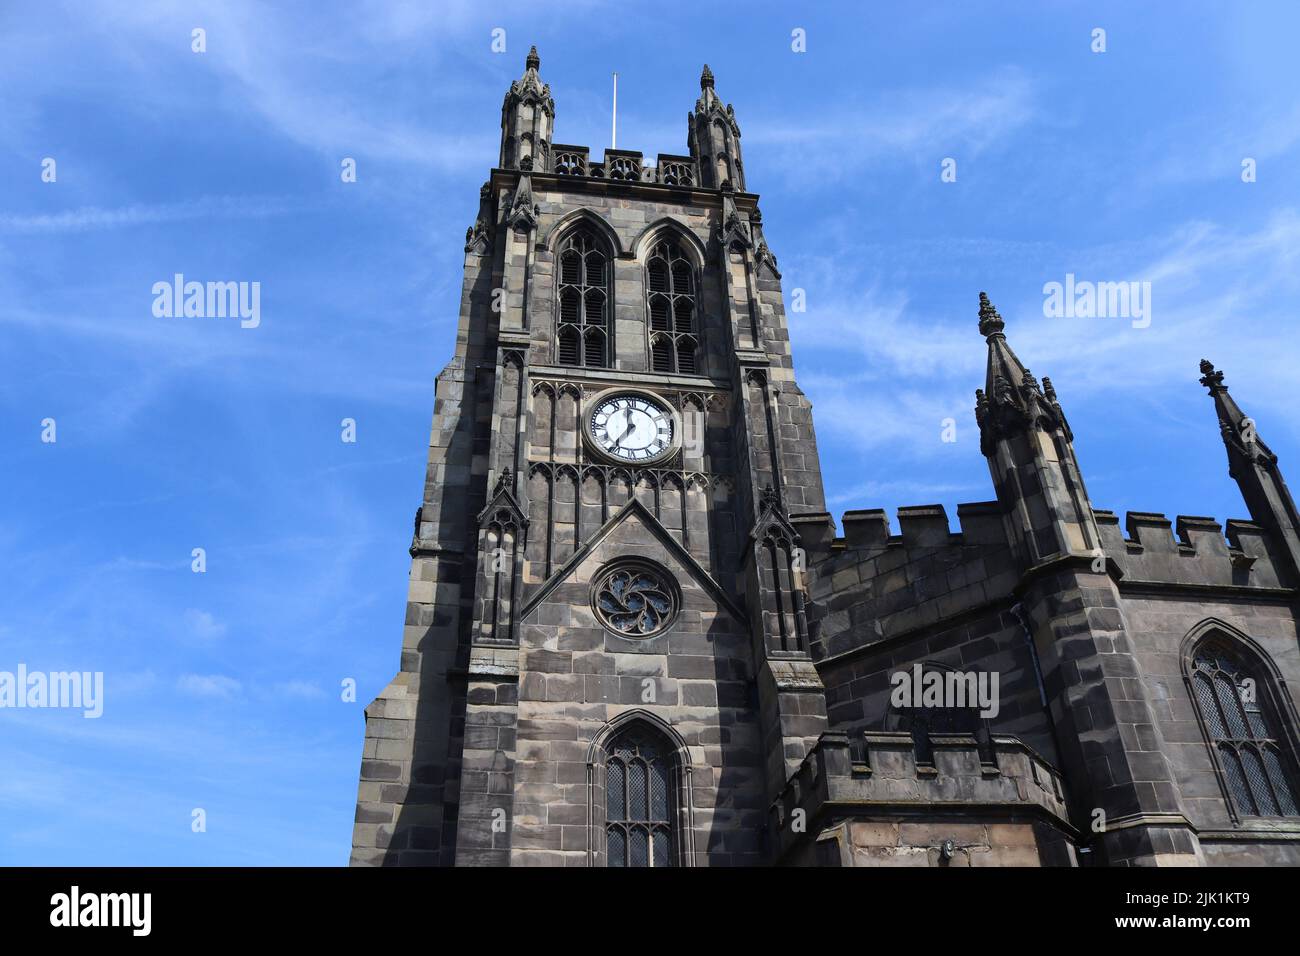 Vue extérieure de l'église paroissiale de St.Mary à Stockport, Grand Manchester, Angleterre. Donnant sur la place du marché, ce bâtiment classé Grade 1 est un ac Banque D'Images